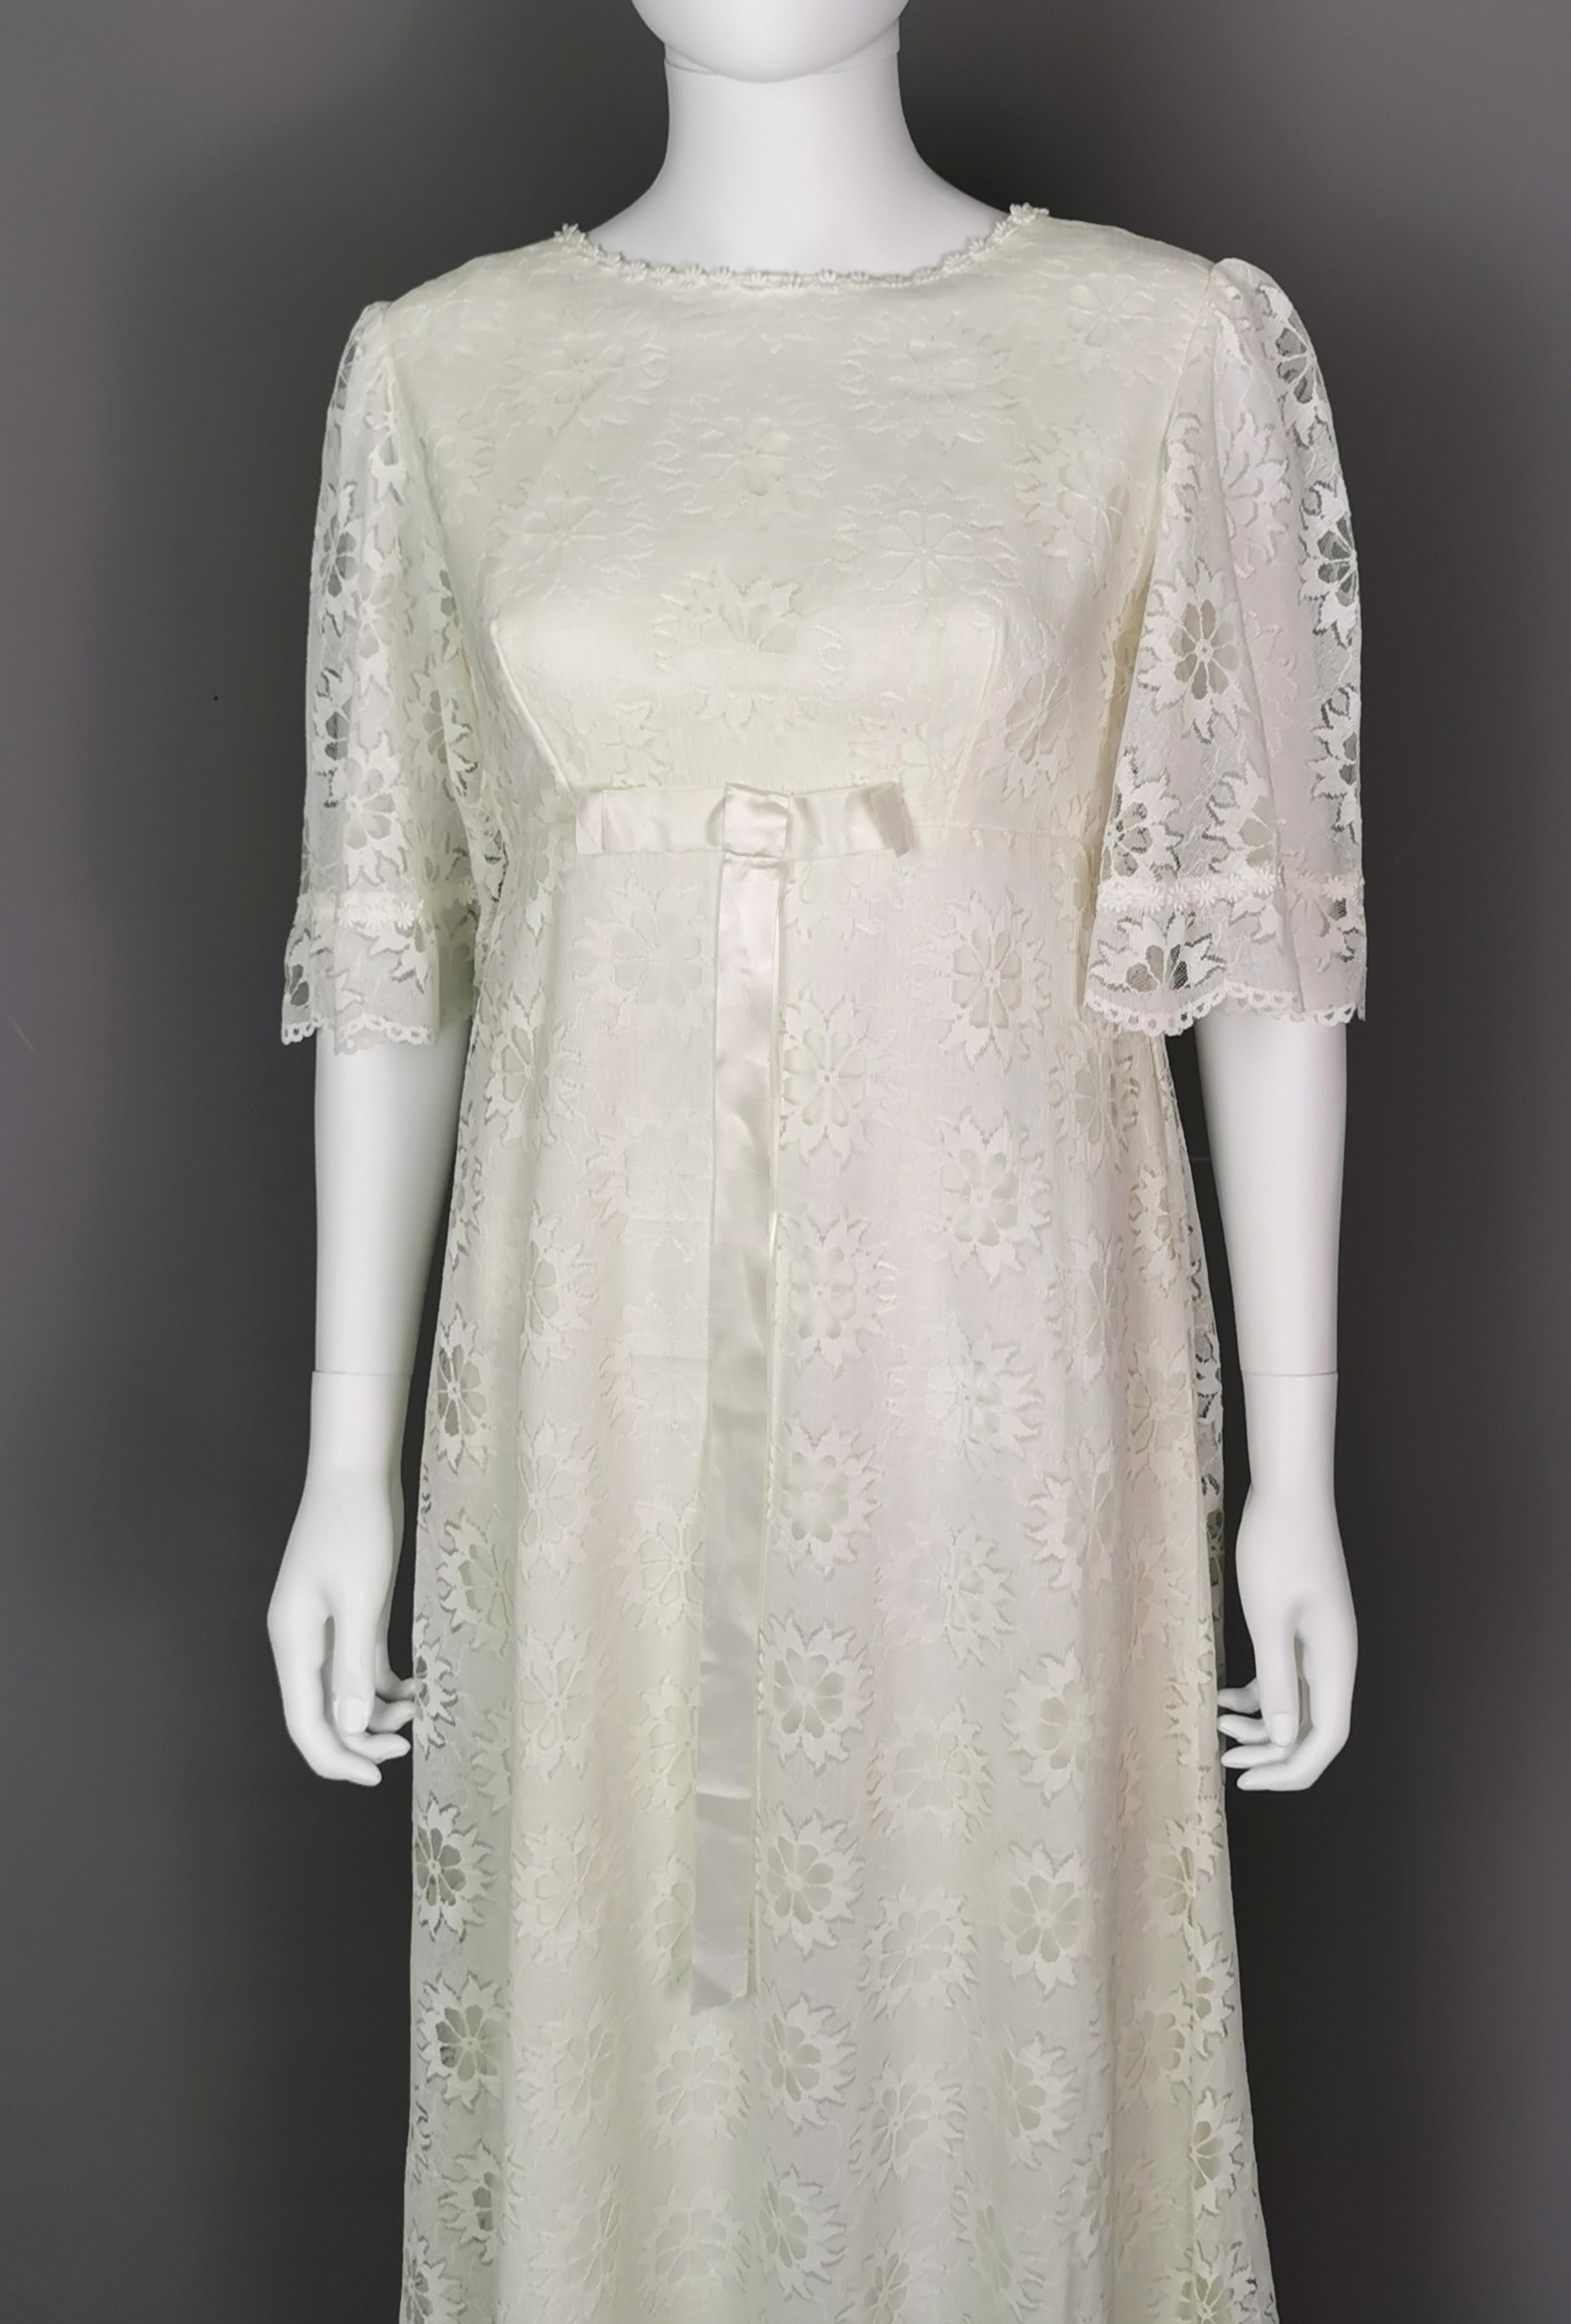 Women's Vintage 1960s Boho lace wedding dress, floral, train 